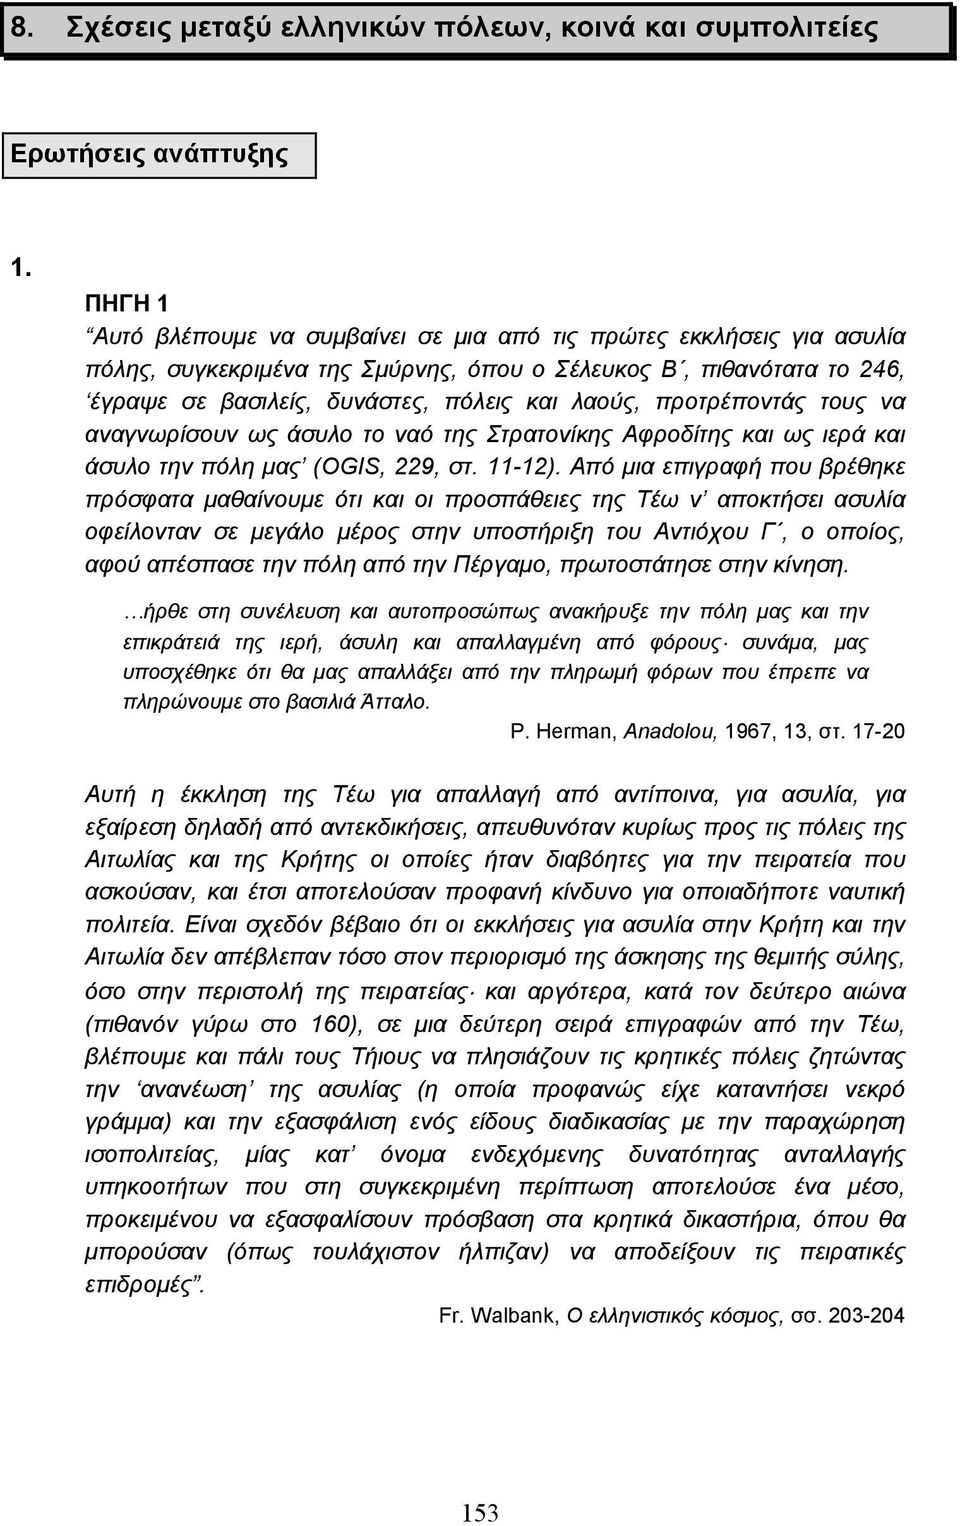 προτρέποντάς τους να αναγνωρίσουν ως άσυλο το ναό της Στρατονίκης Αφροδίτης και ως ιερά και άσυλο την πόλη µας (OGIS, 229, στ. 11-12).